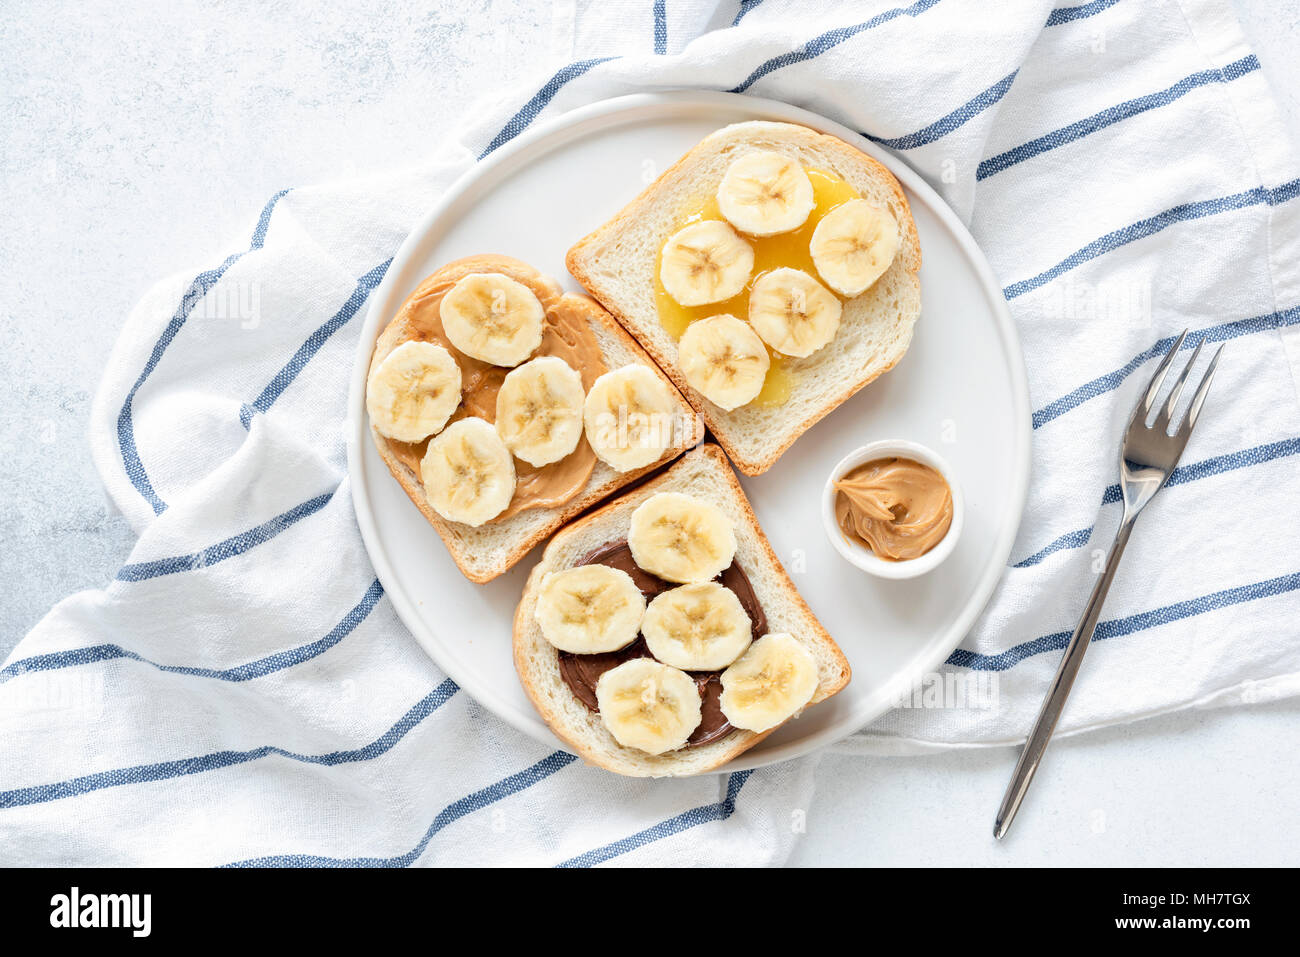 Banana Burro di arachidi toast sulla piastra bianca. Vegan Snack o la prima colazione. Dado di deliziosi burro, pane e fette biscottate di Banana. Mangiare sano, uno stile di vita sano Foto Stock